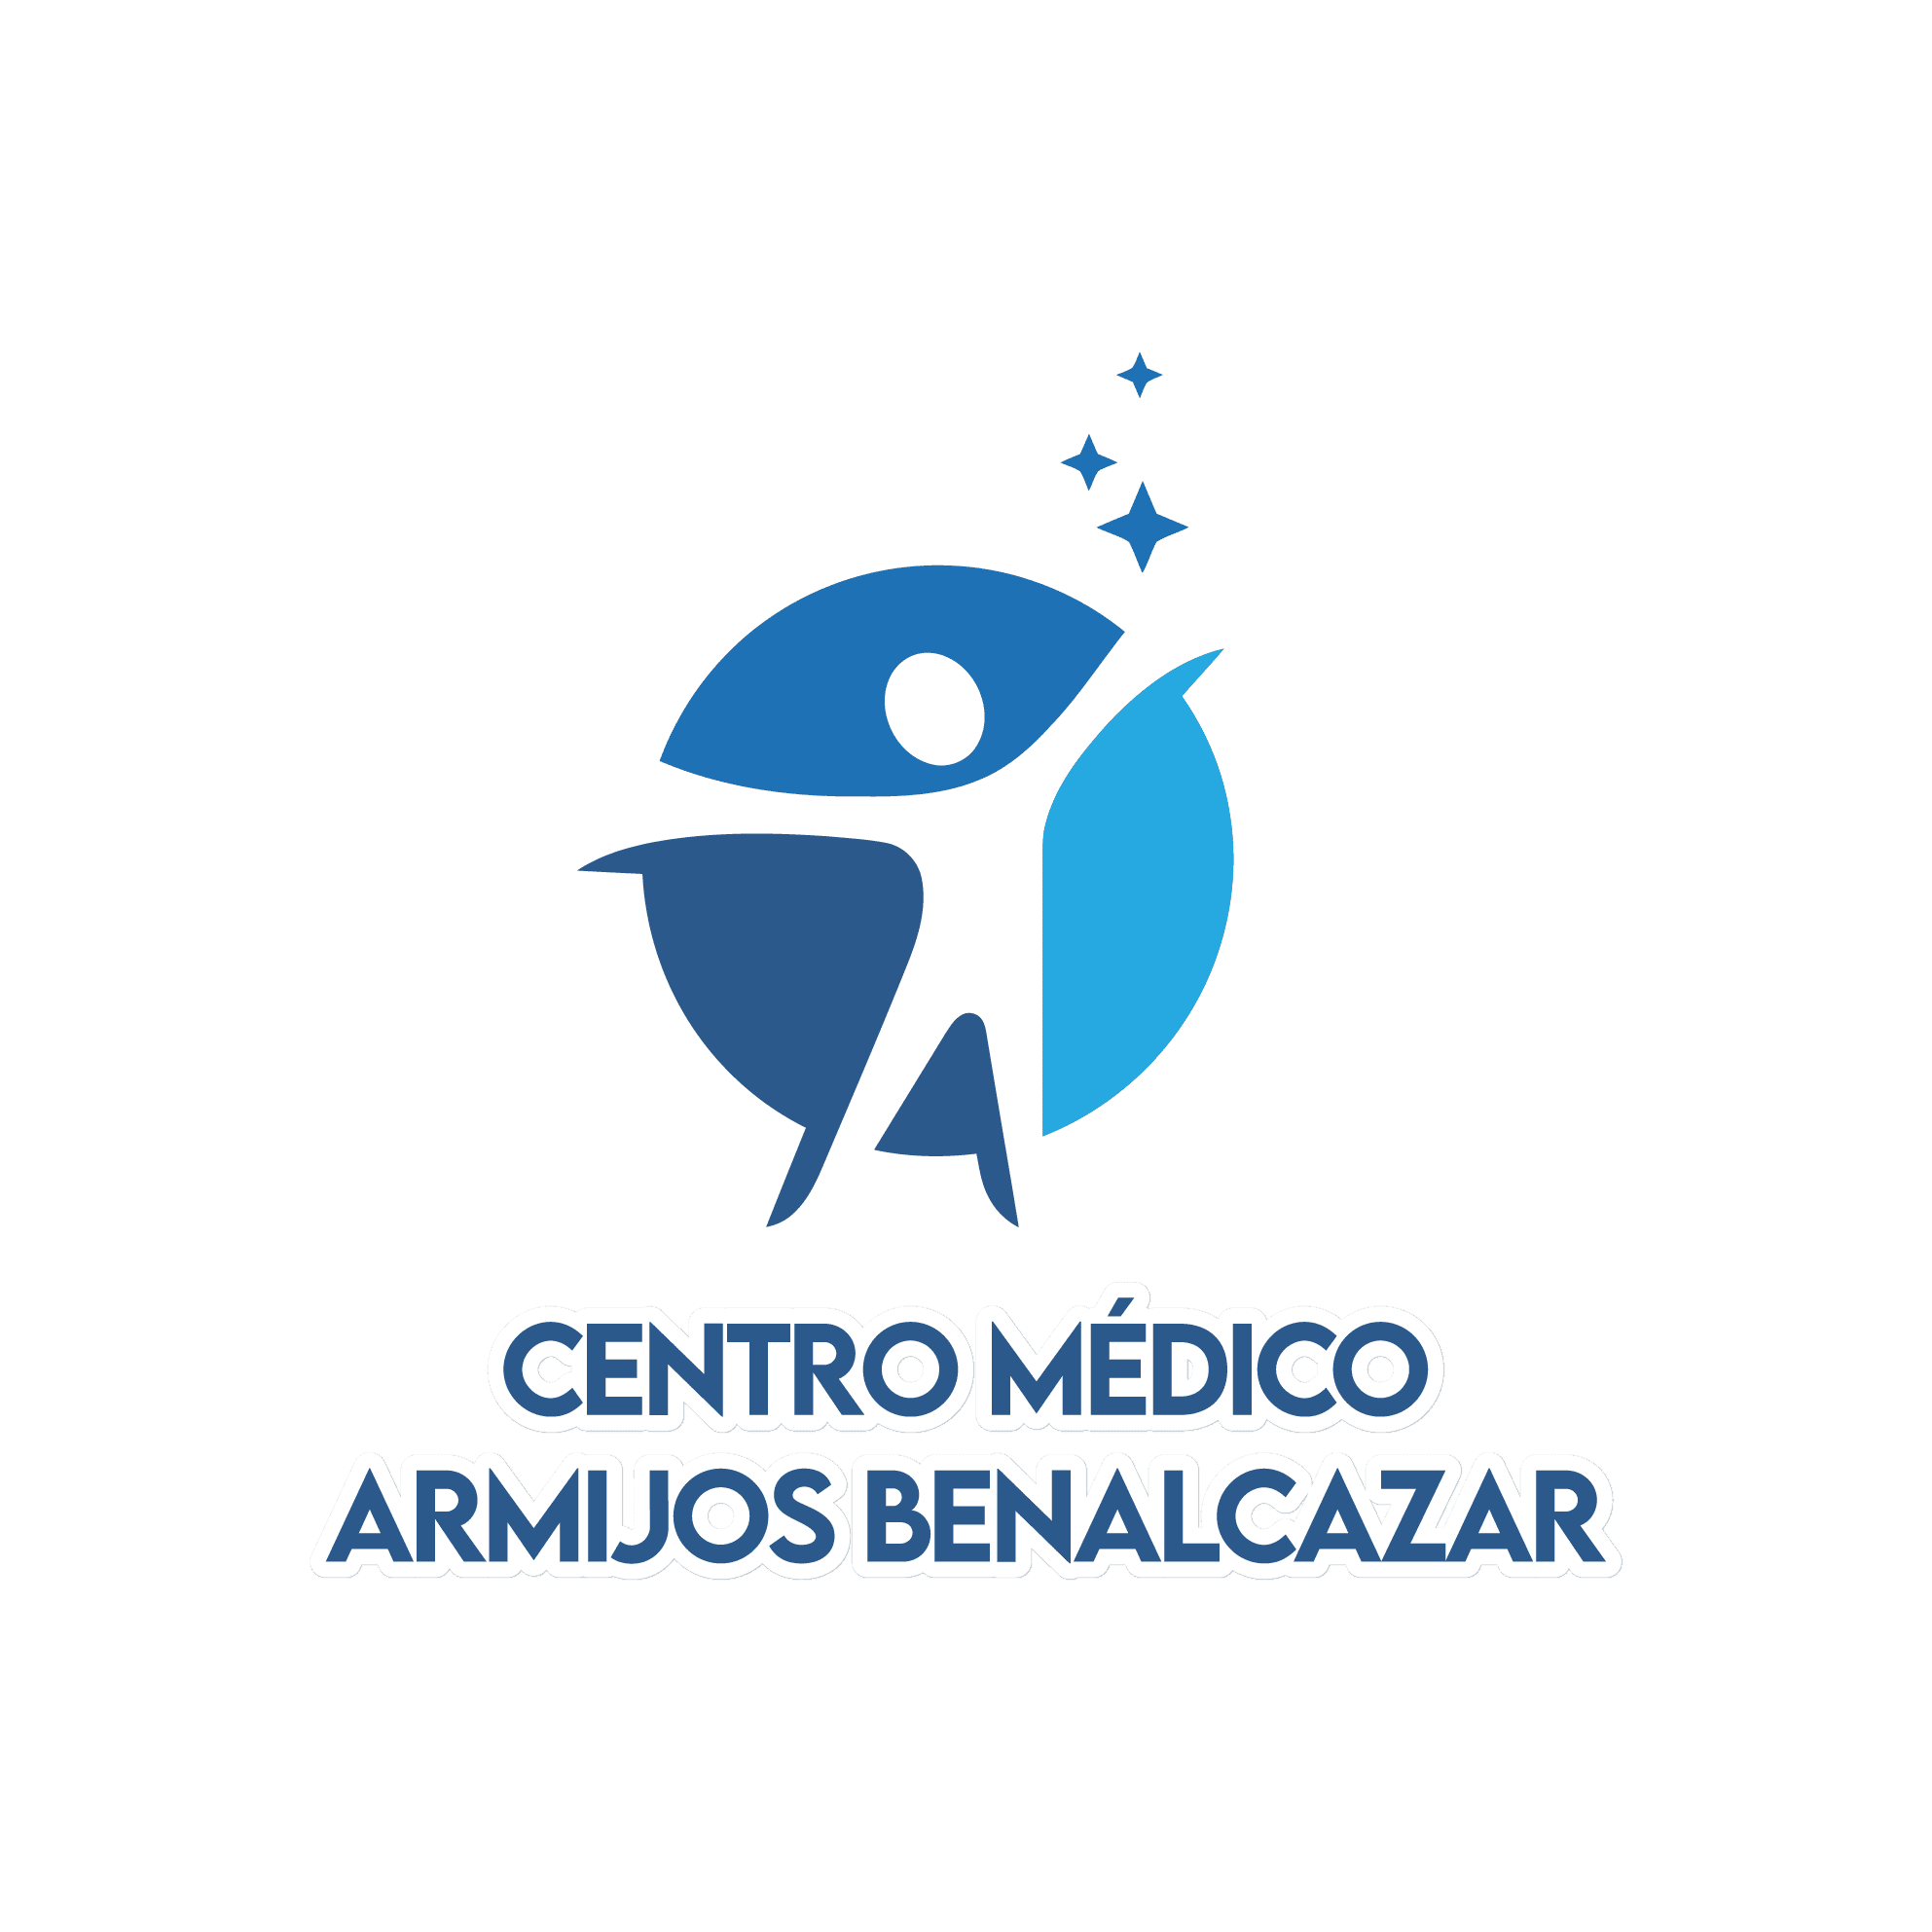 Centro médico Armijos Benalcazar